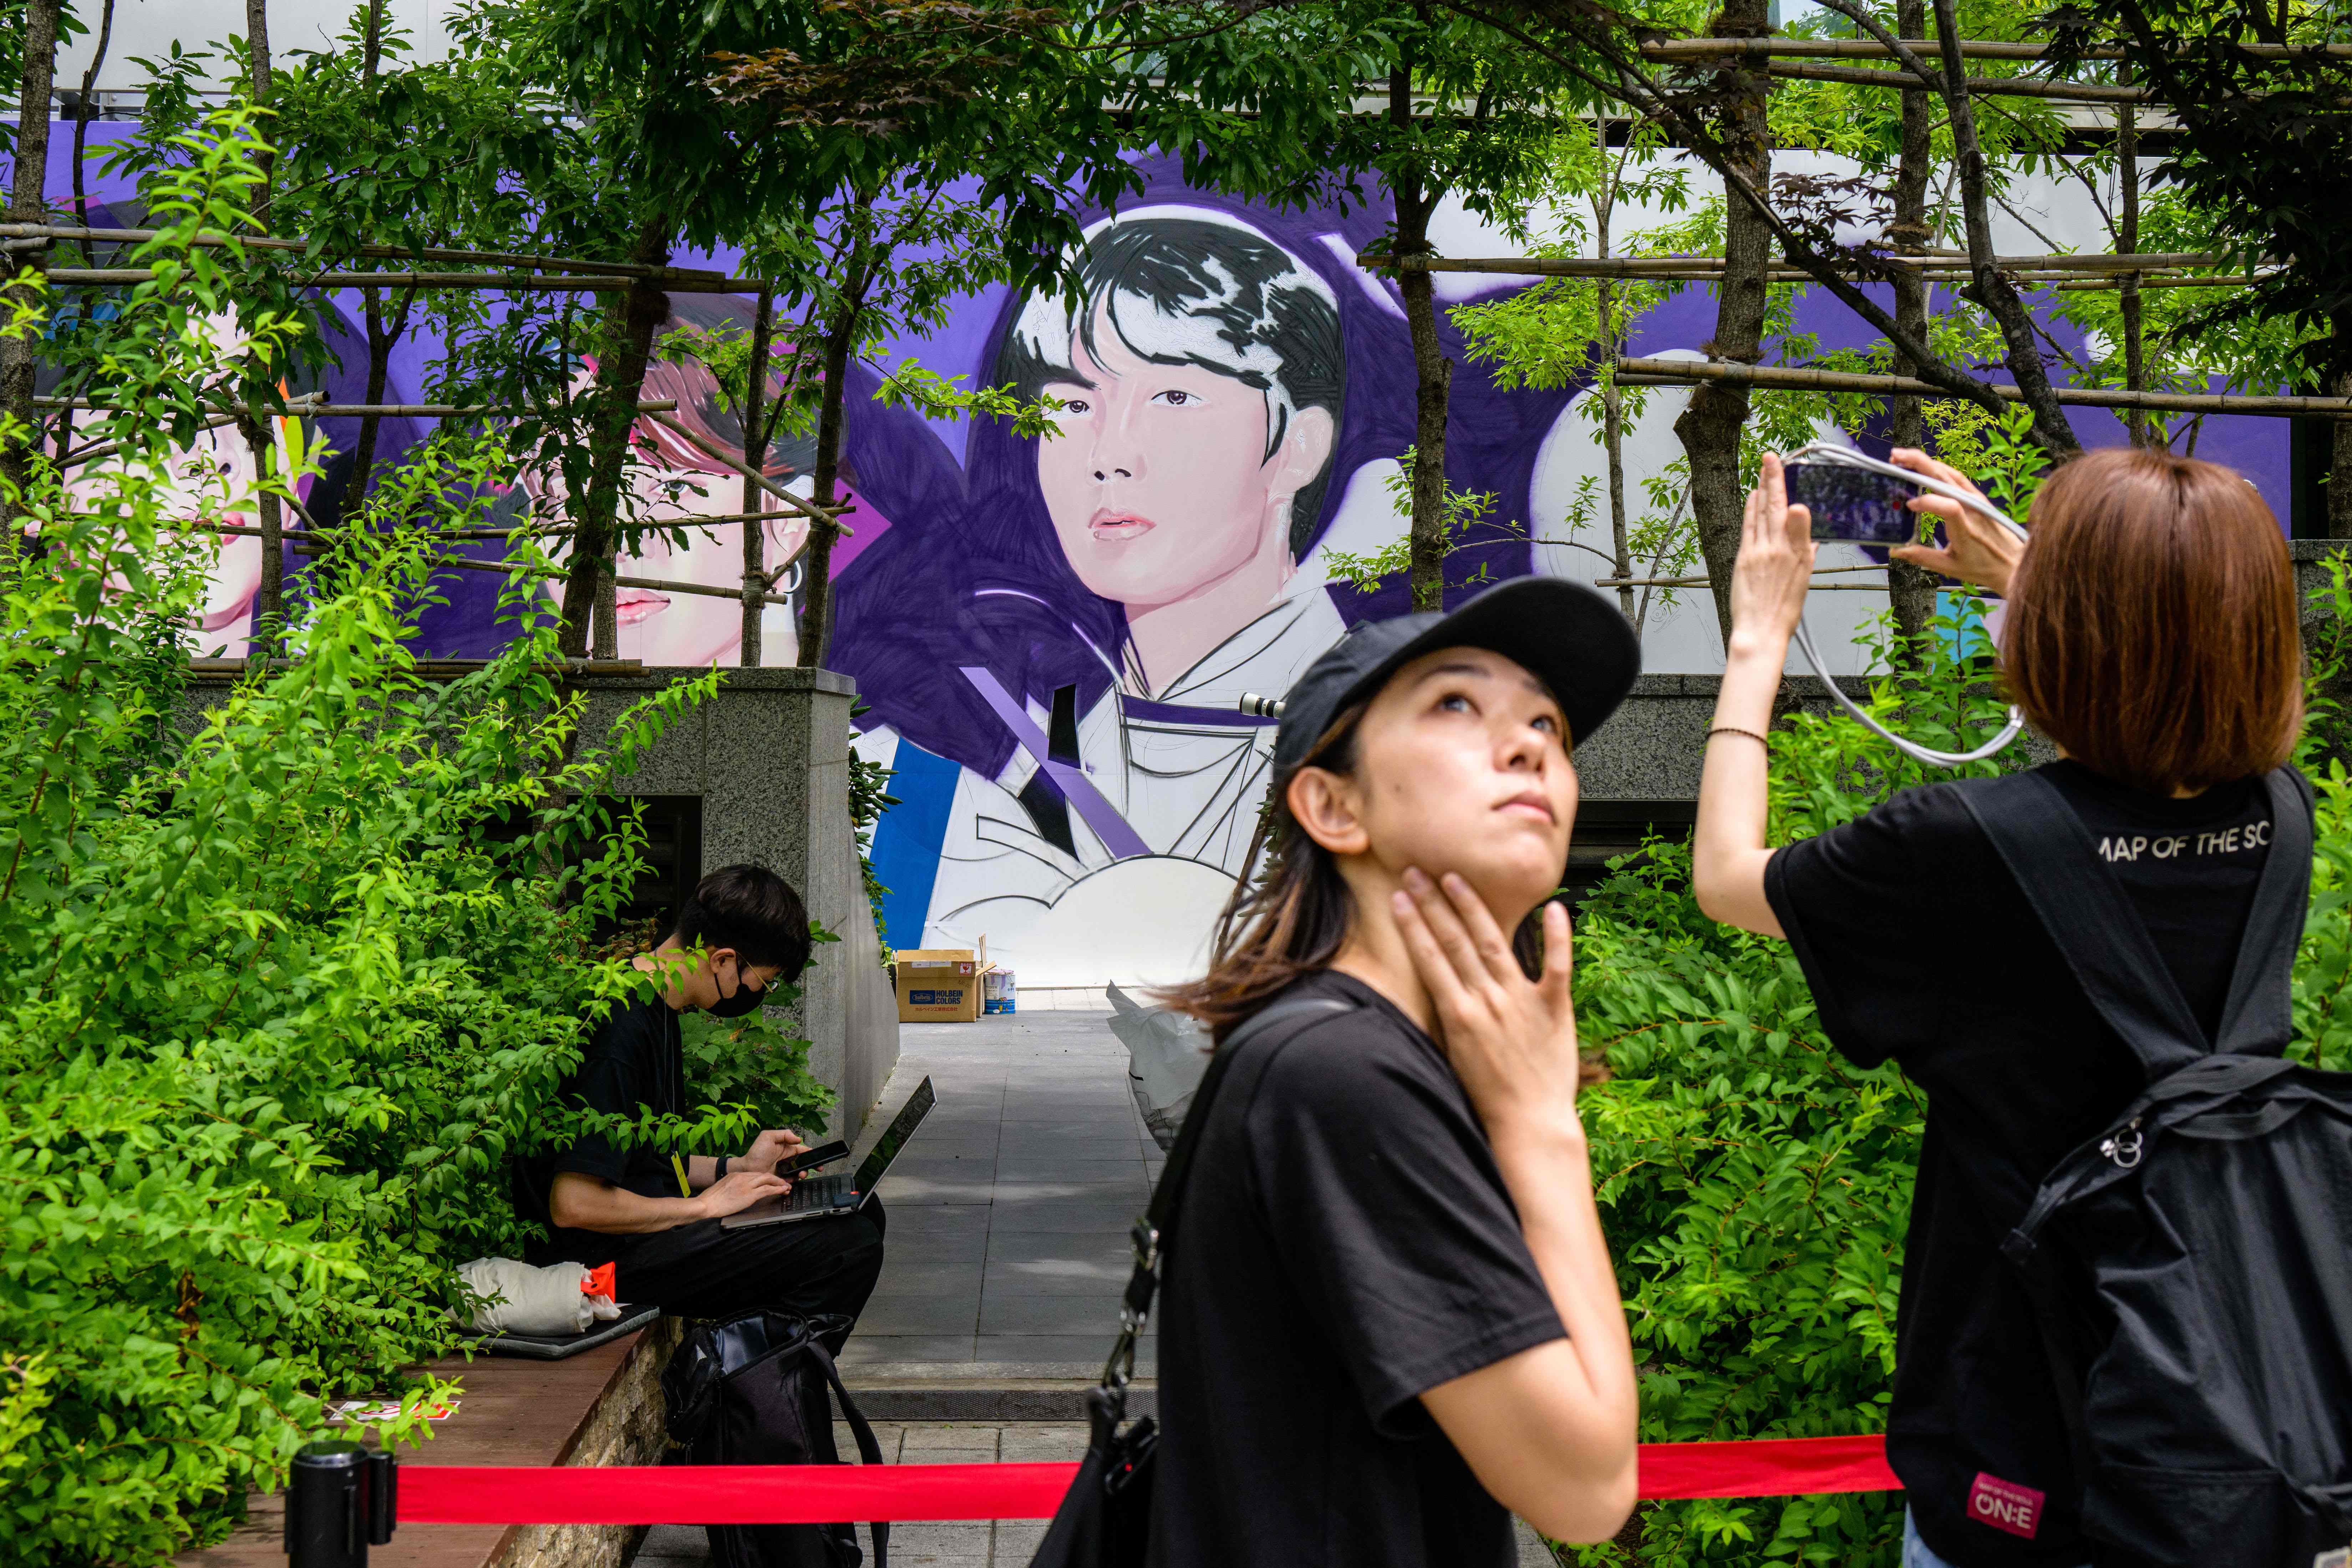 BTS ha sumado un mural y un nuevo sencillo más a la lista de actividades y estrenos con motivo de sus 10 años, que se cumplieron exactamente el 13 de junio. (Foto Prensa Libre: Anthony WALLACE / AFP)